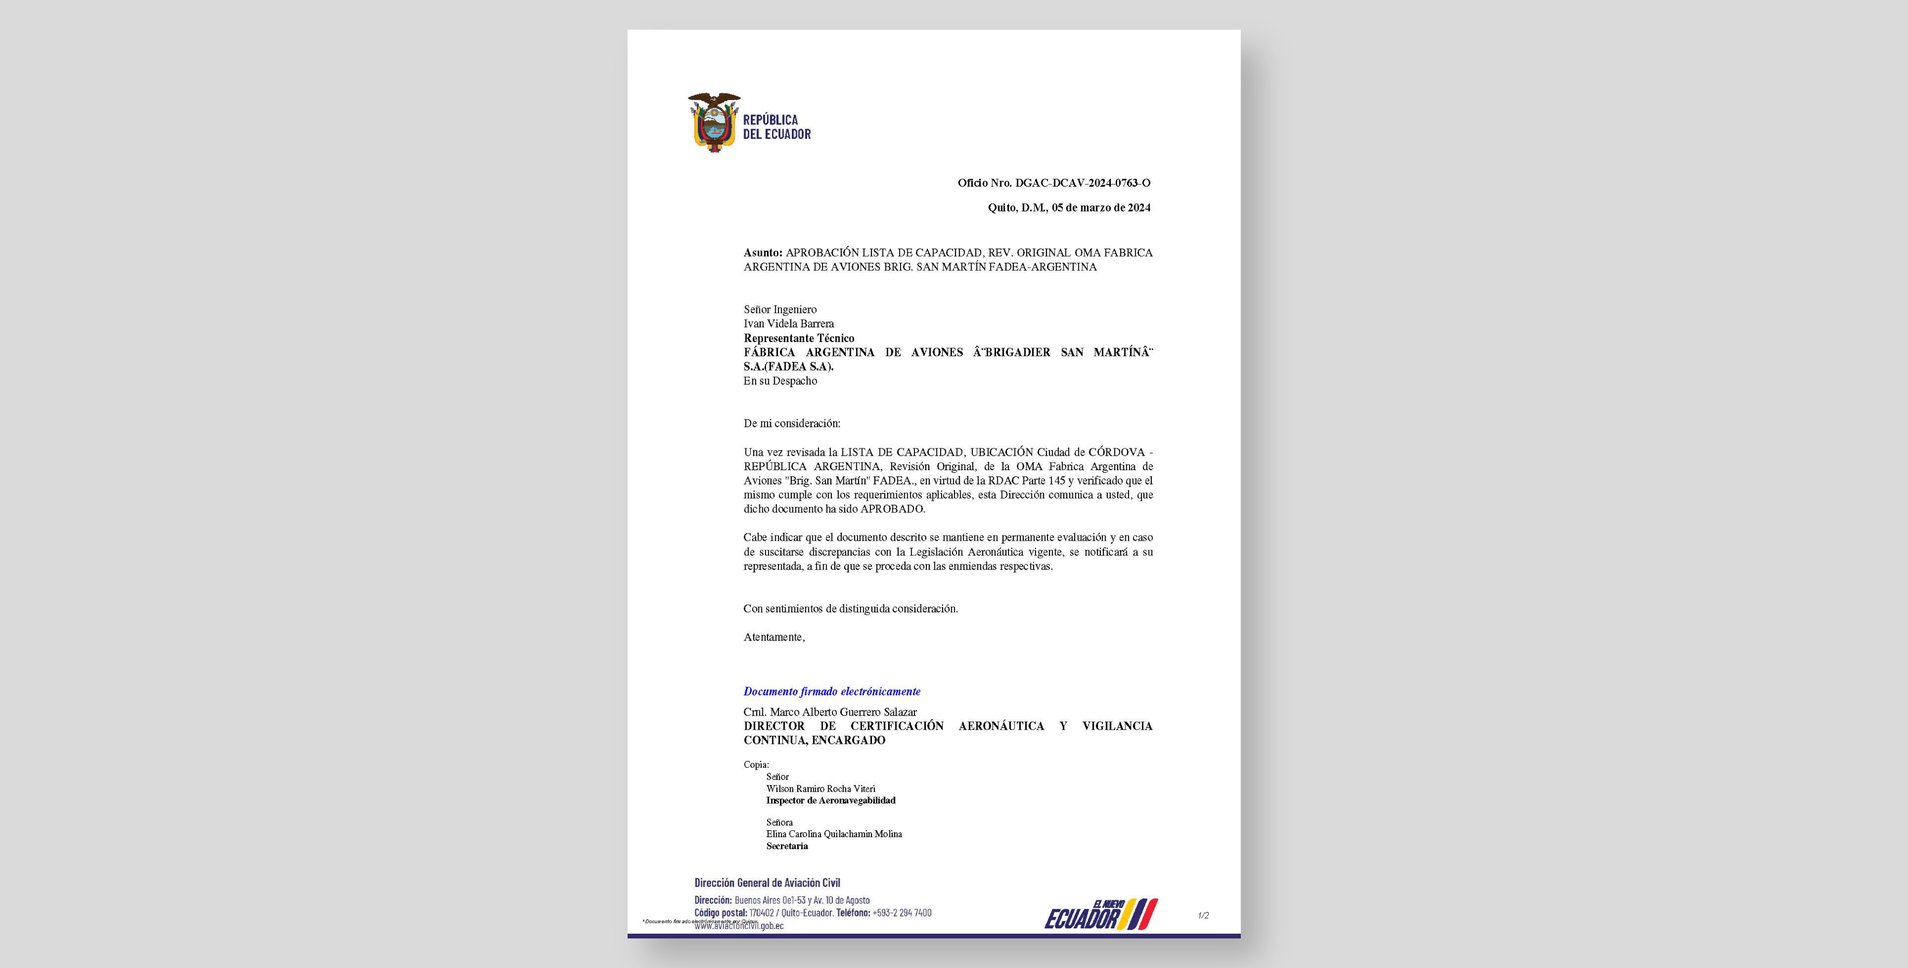 DGAC Ecuador - Aprobation Capabilities List